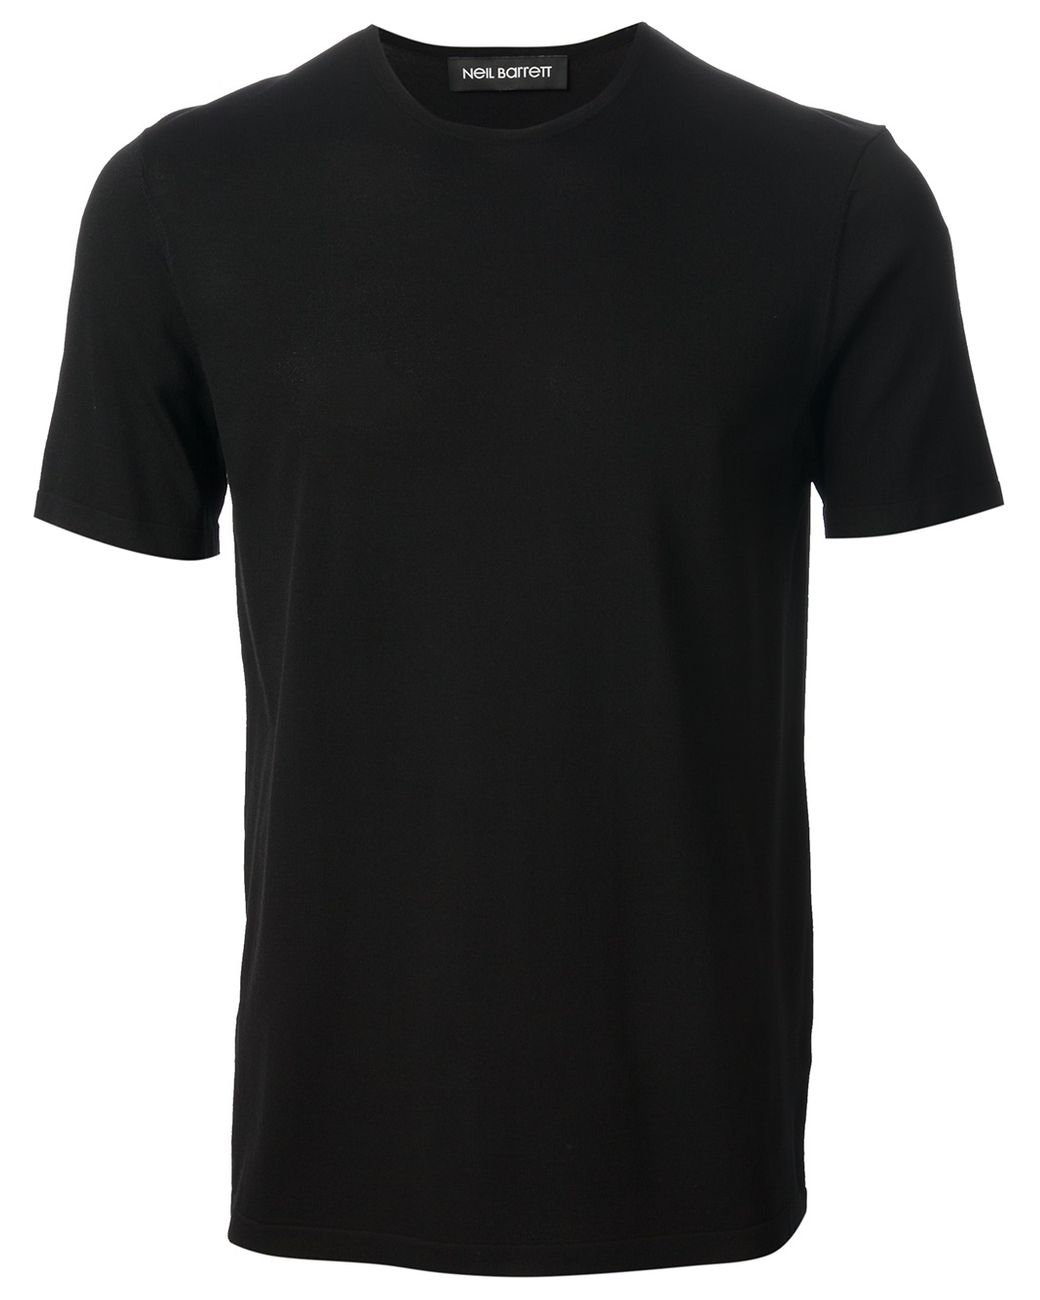 Neil Barrett Plain T-Shirt in Black for Men | Lyst